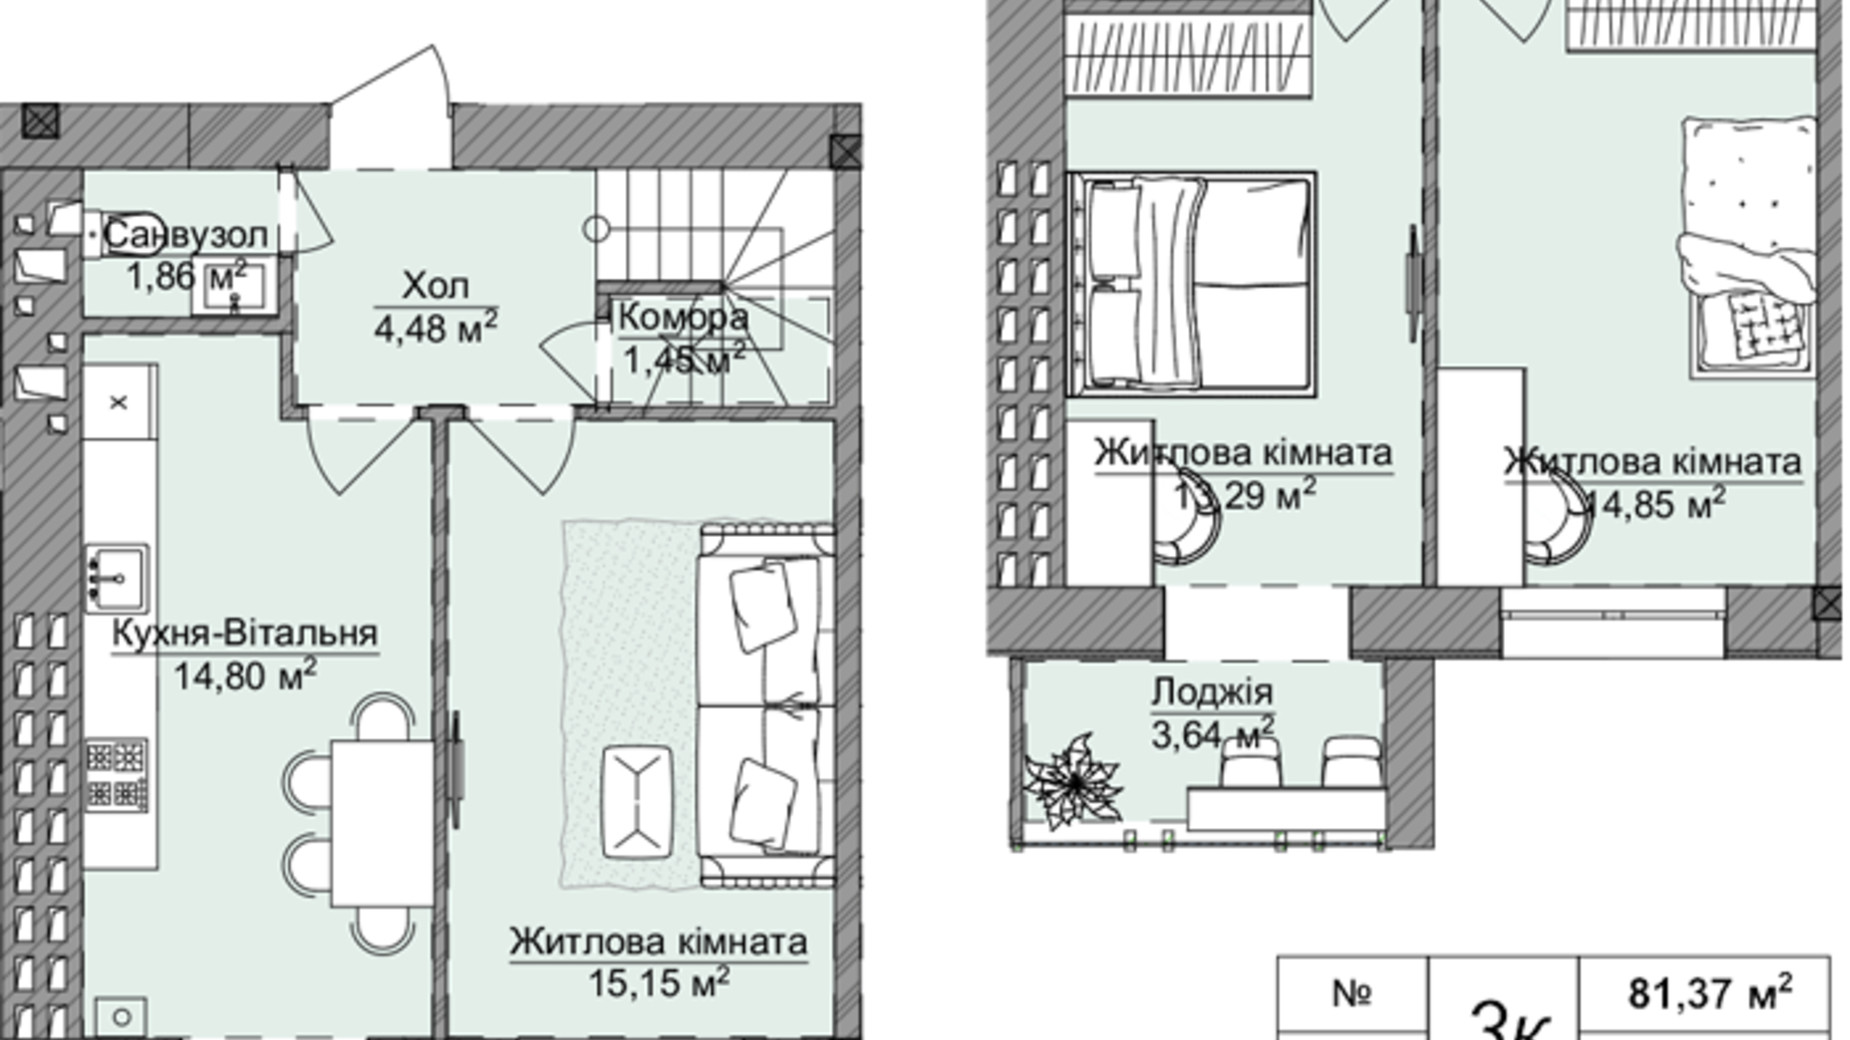 Планировка много­уровневой квартиры в ЖК Теплый дом Plus 86.8 м², фото 690951